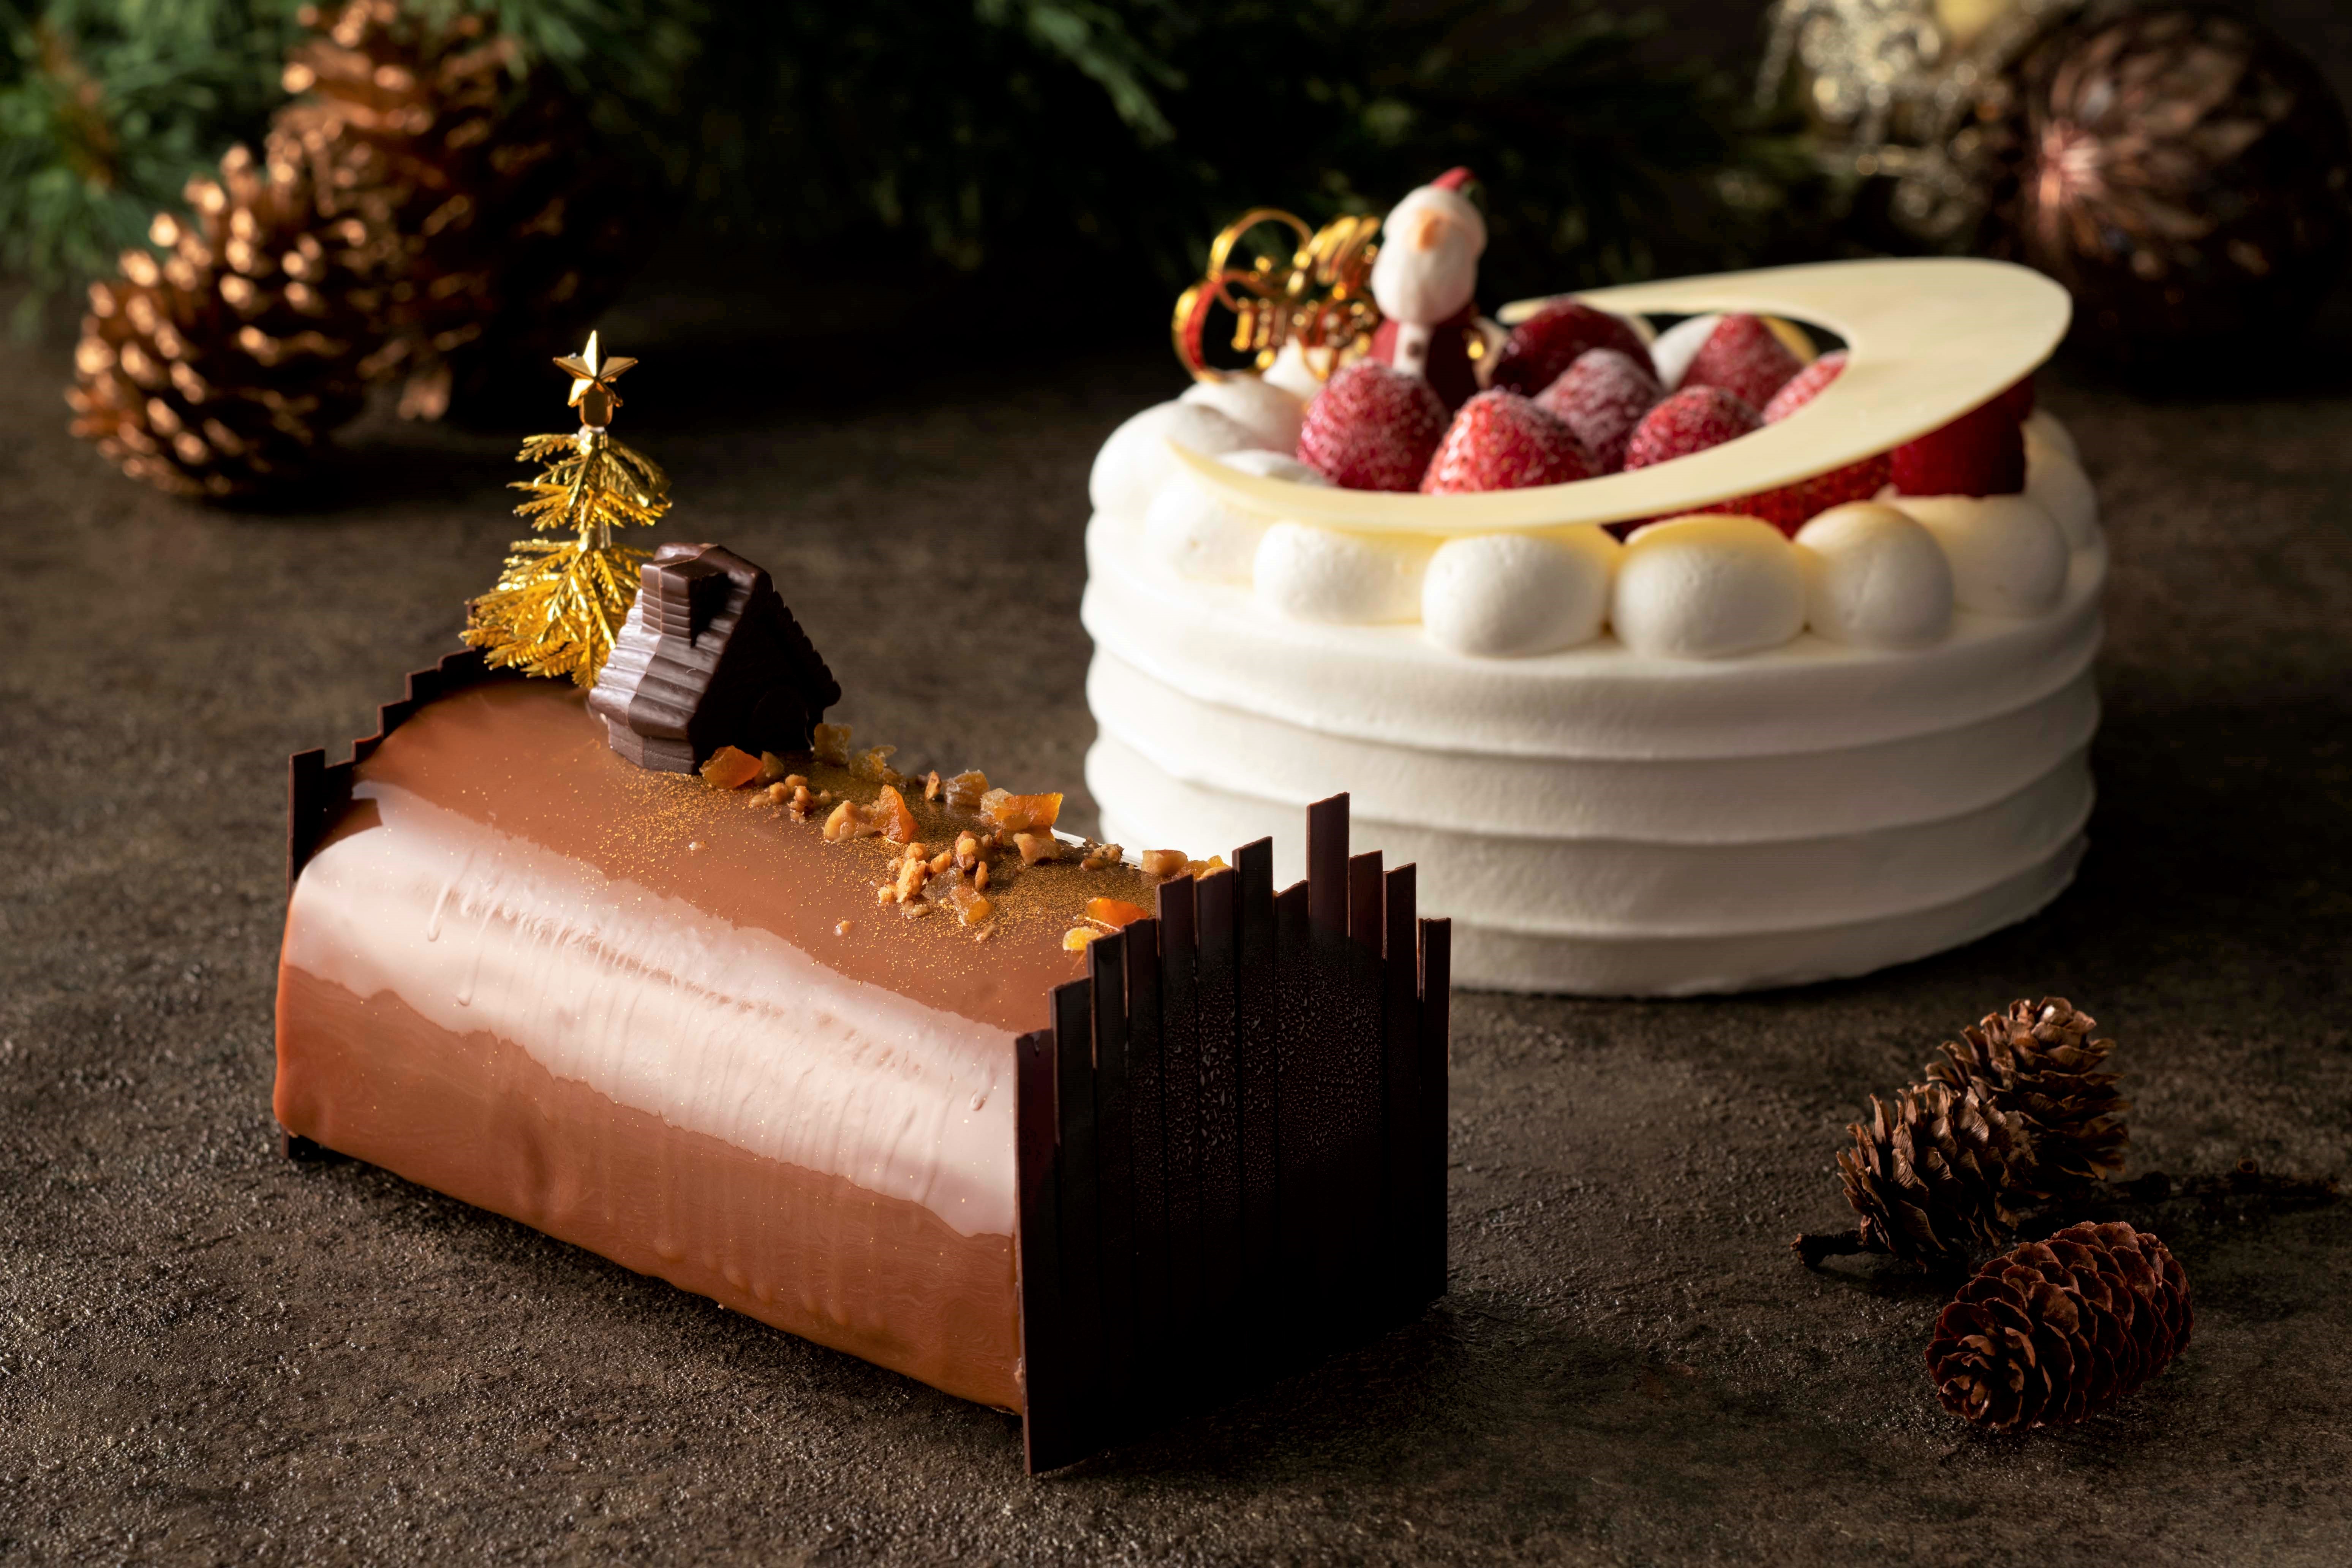 ヨコハマ グランド インターコンチネンタル ホテル 年 クリスマスケーキ4種とシュトーレンの予約受付を11月1日より開始 年10月16日 エキサイトニュース